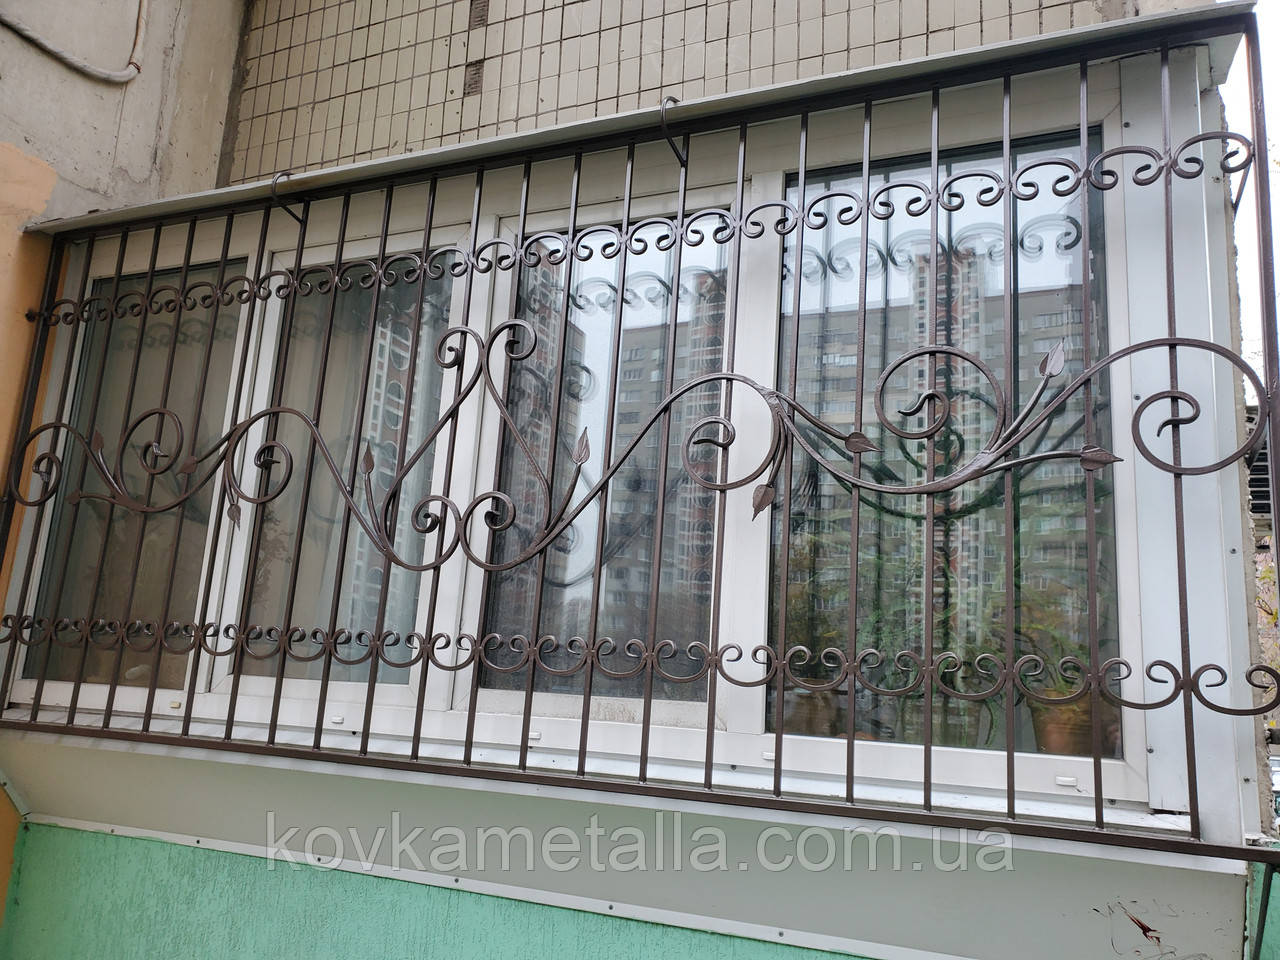 Кована решітка на вікно Київ арт Кр No 69